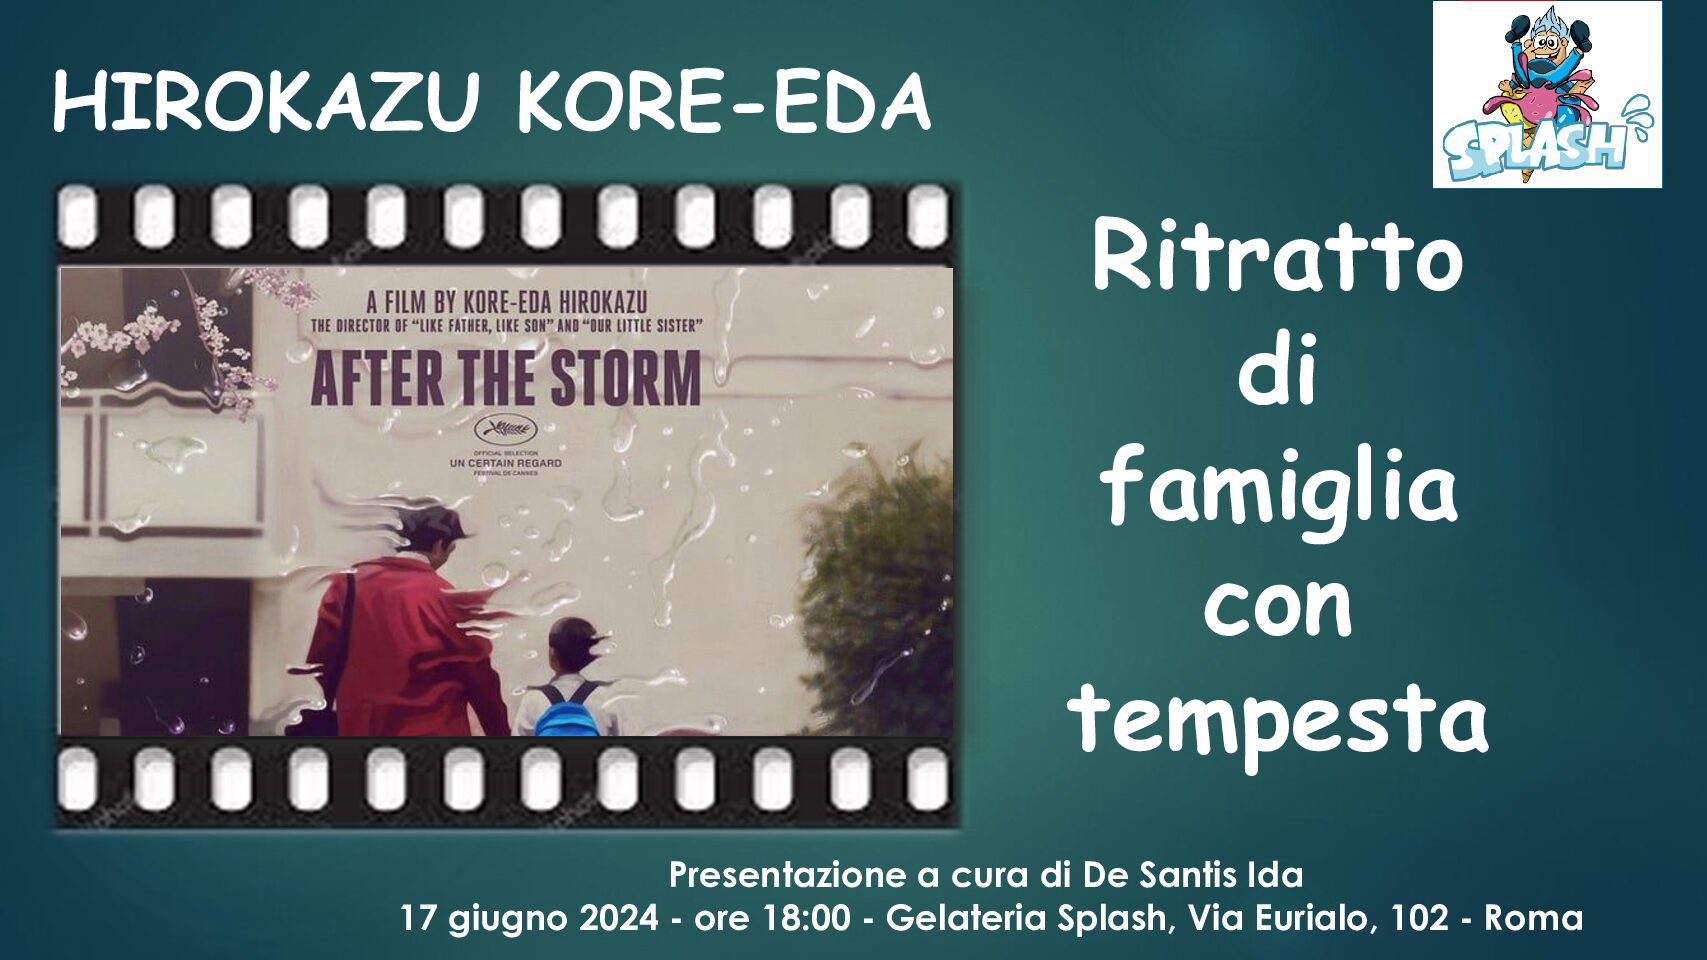 Cineforum presentato da Ida De Santis: Ritratto di famiglia con tempesta di Hirokazu Kore-Eda